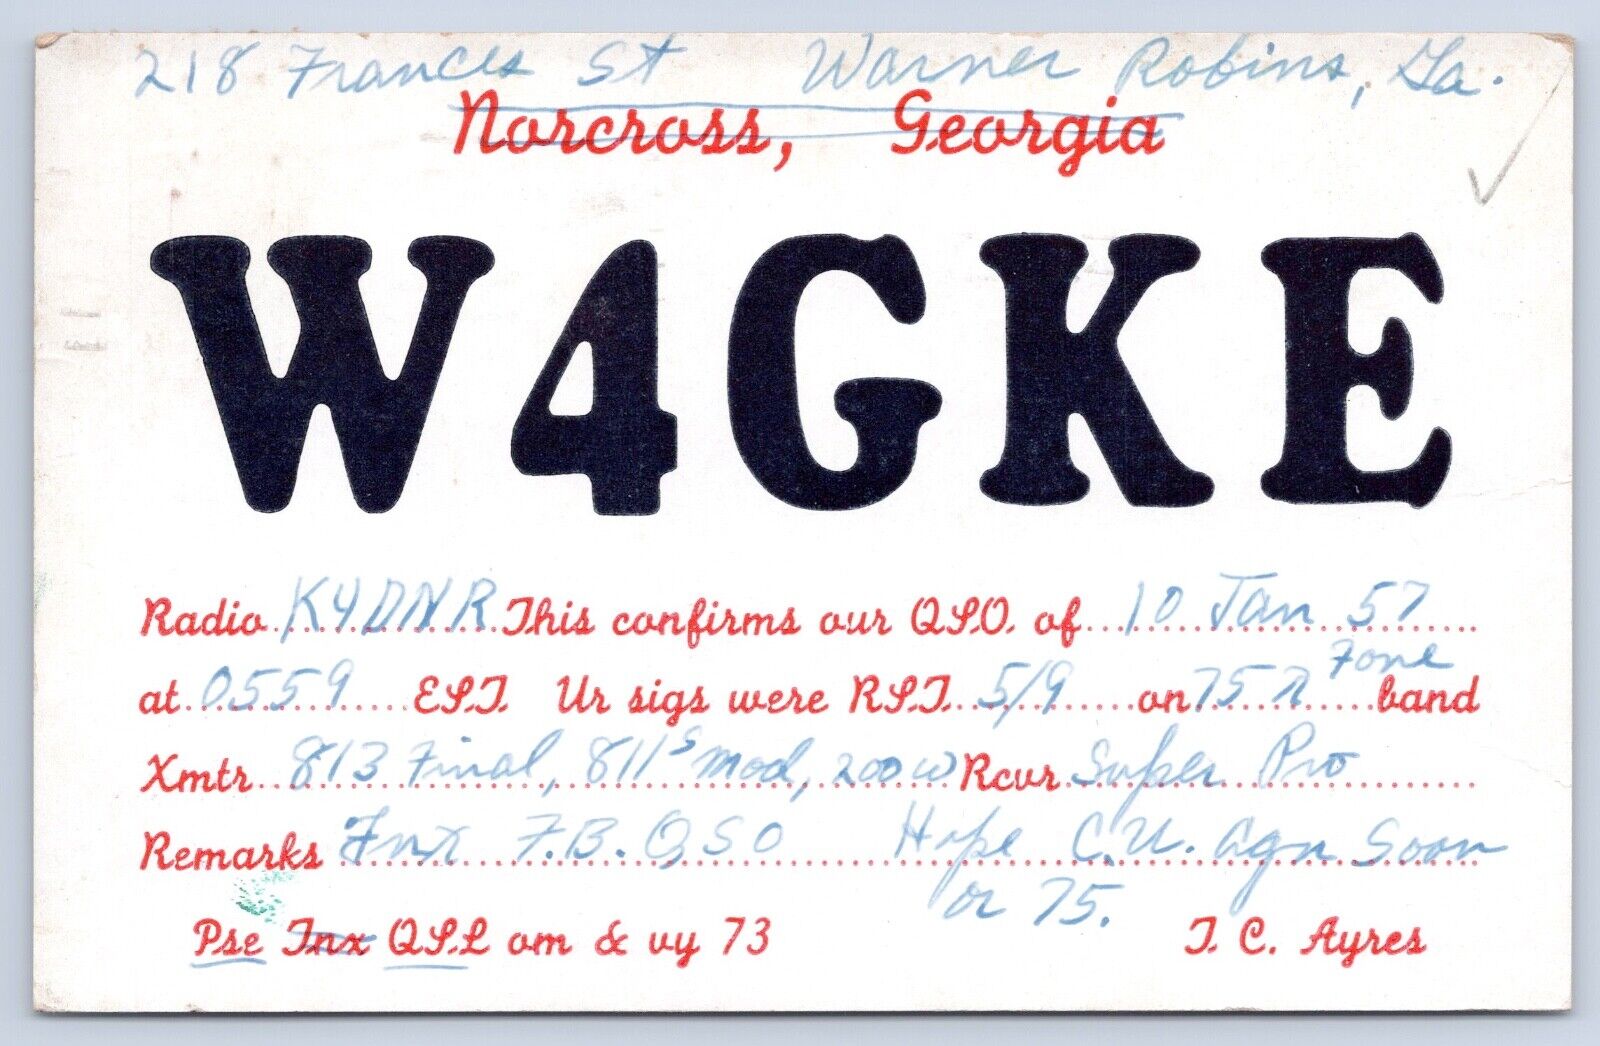 QSL CB Ham Radio Card W4GKE Warner Robins Georgia Vtg Peach County GA 1957 Card